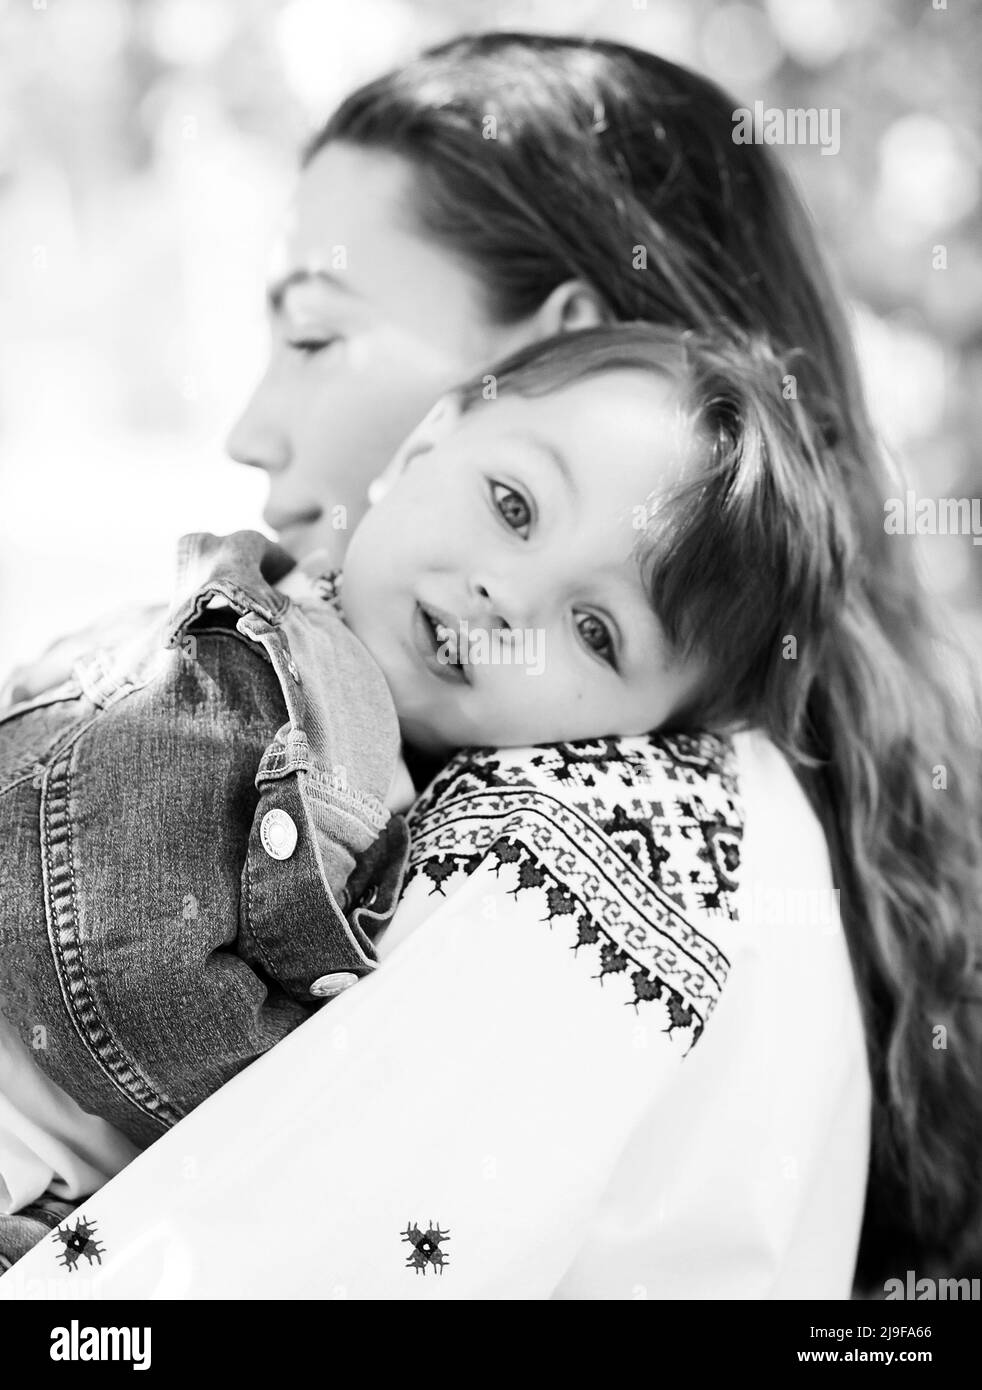 Photo noir et blanc petit bébé sur les mains de la mère. Portrait de famille de deux personnes. Arrière-plan paysage de printemps. Banque D'Images